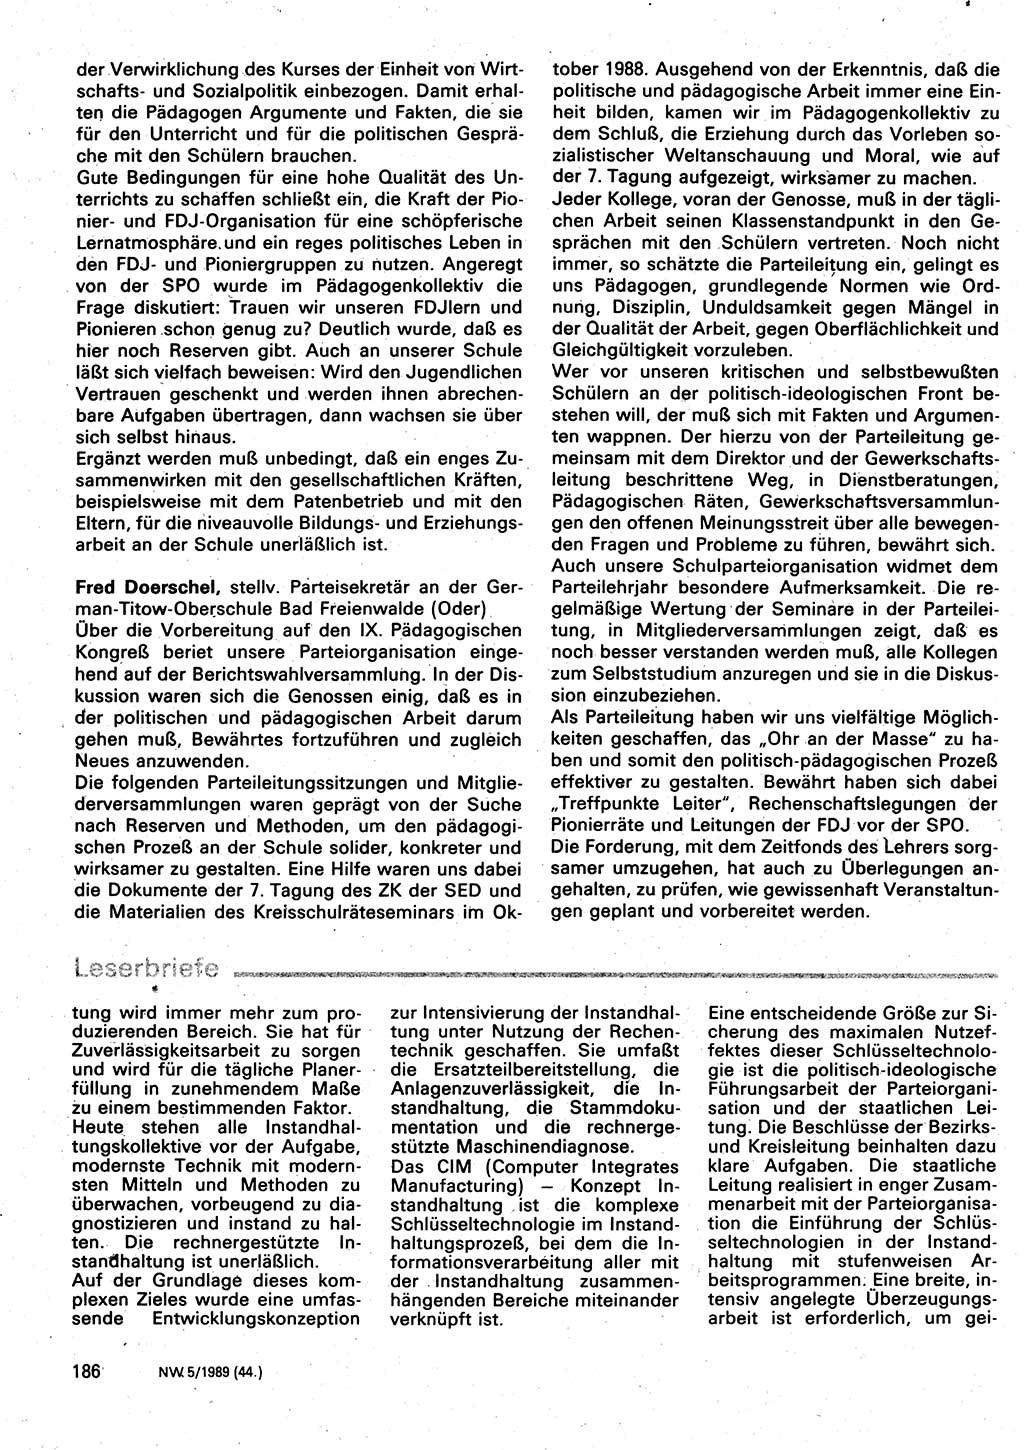 Neuer Weg (NW), Organ des Zentralkomitees (ZK) der SED (Sozialistische Einheitspartei Deutschlands) für Fragen des Parteilebens, 44. Jahrgang [Deutsche Demokratische Republik (DDR)] 1989, Seite 186 (NW ZK SED DDR 1989, S. 186)